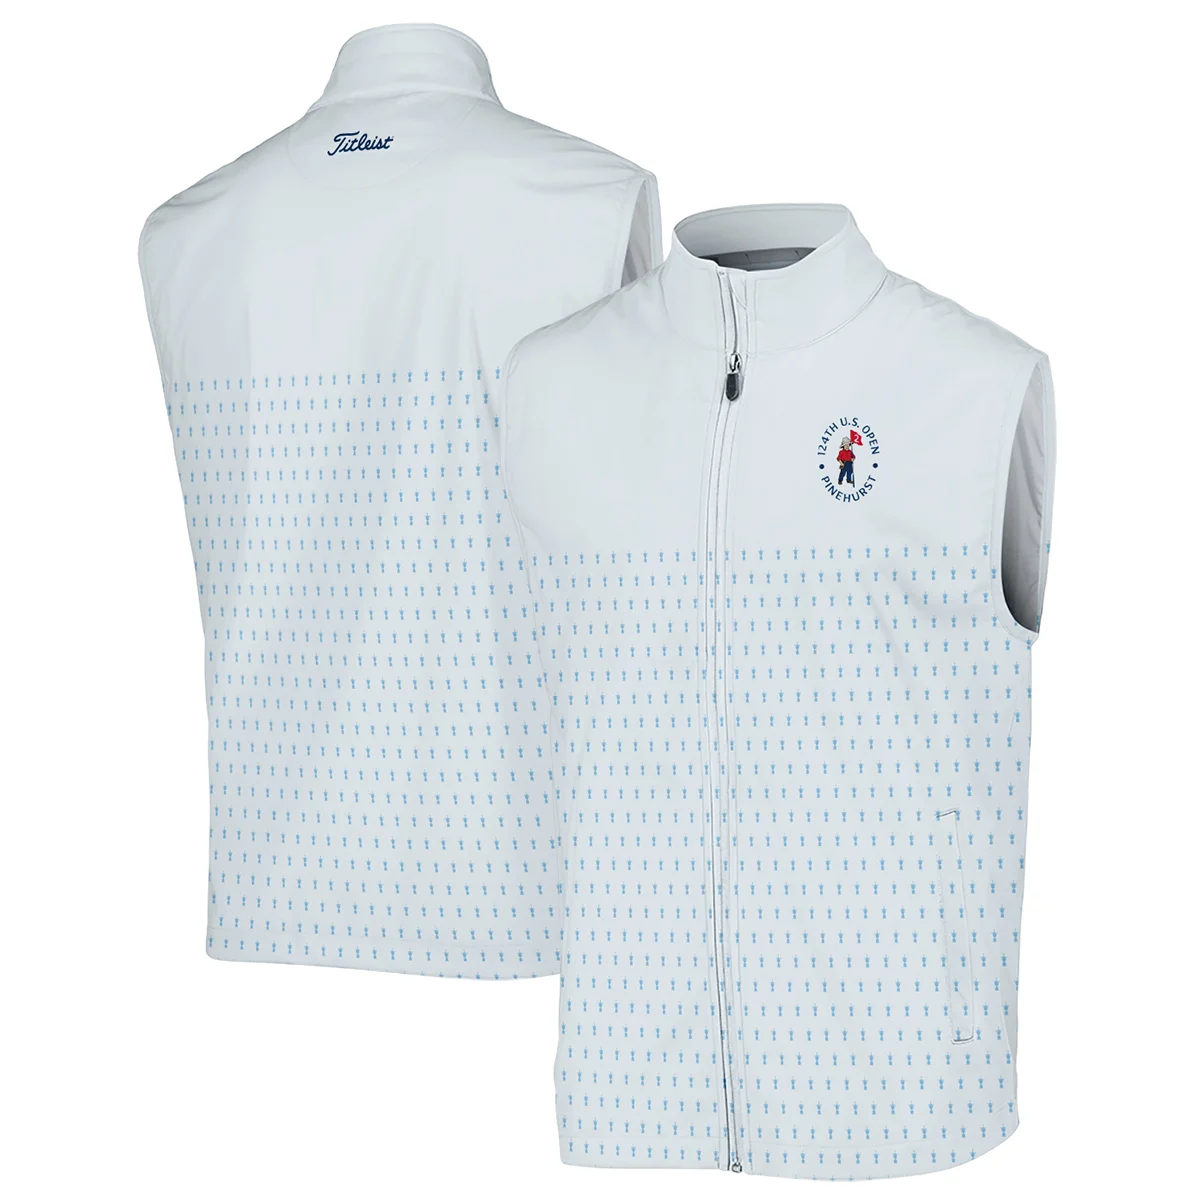 U.S Open Trophy Pattern Light Blue 124th U.S. Open Pinehurst Titleist Polo Shirt Mandarin Collar Polo Shirt